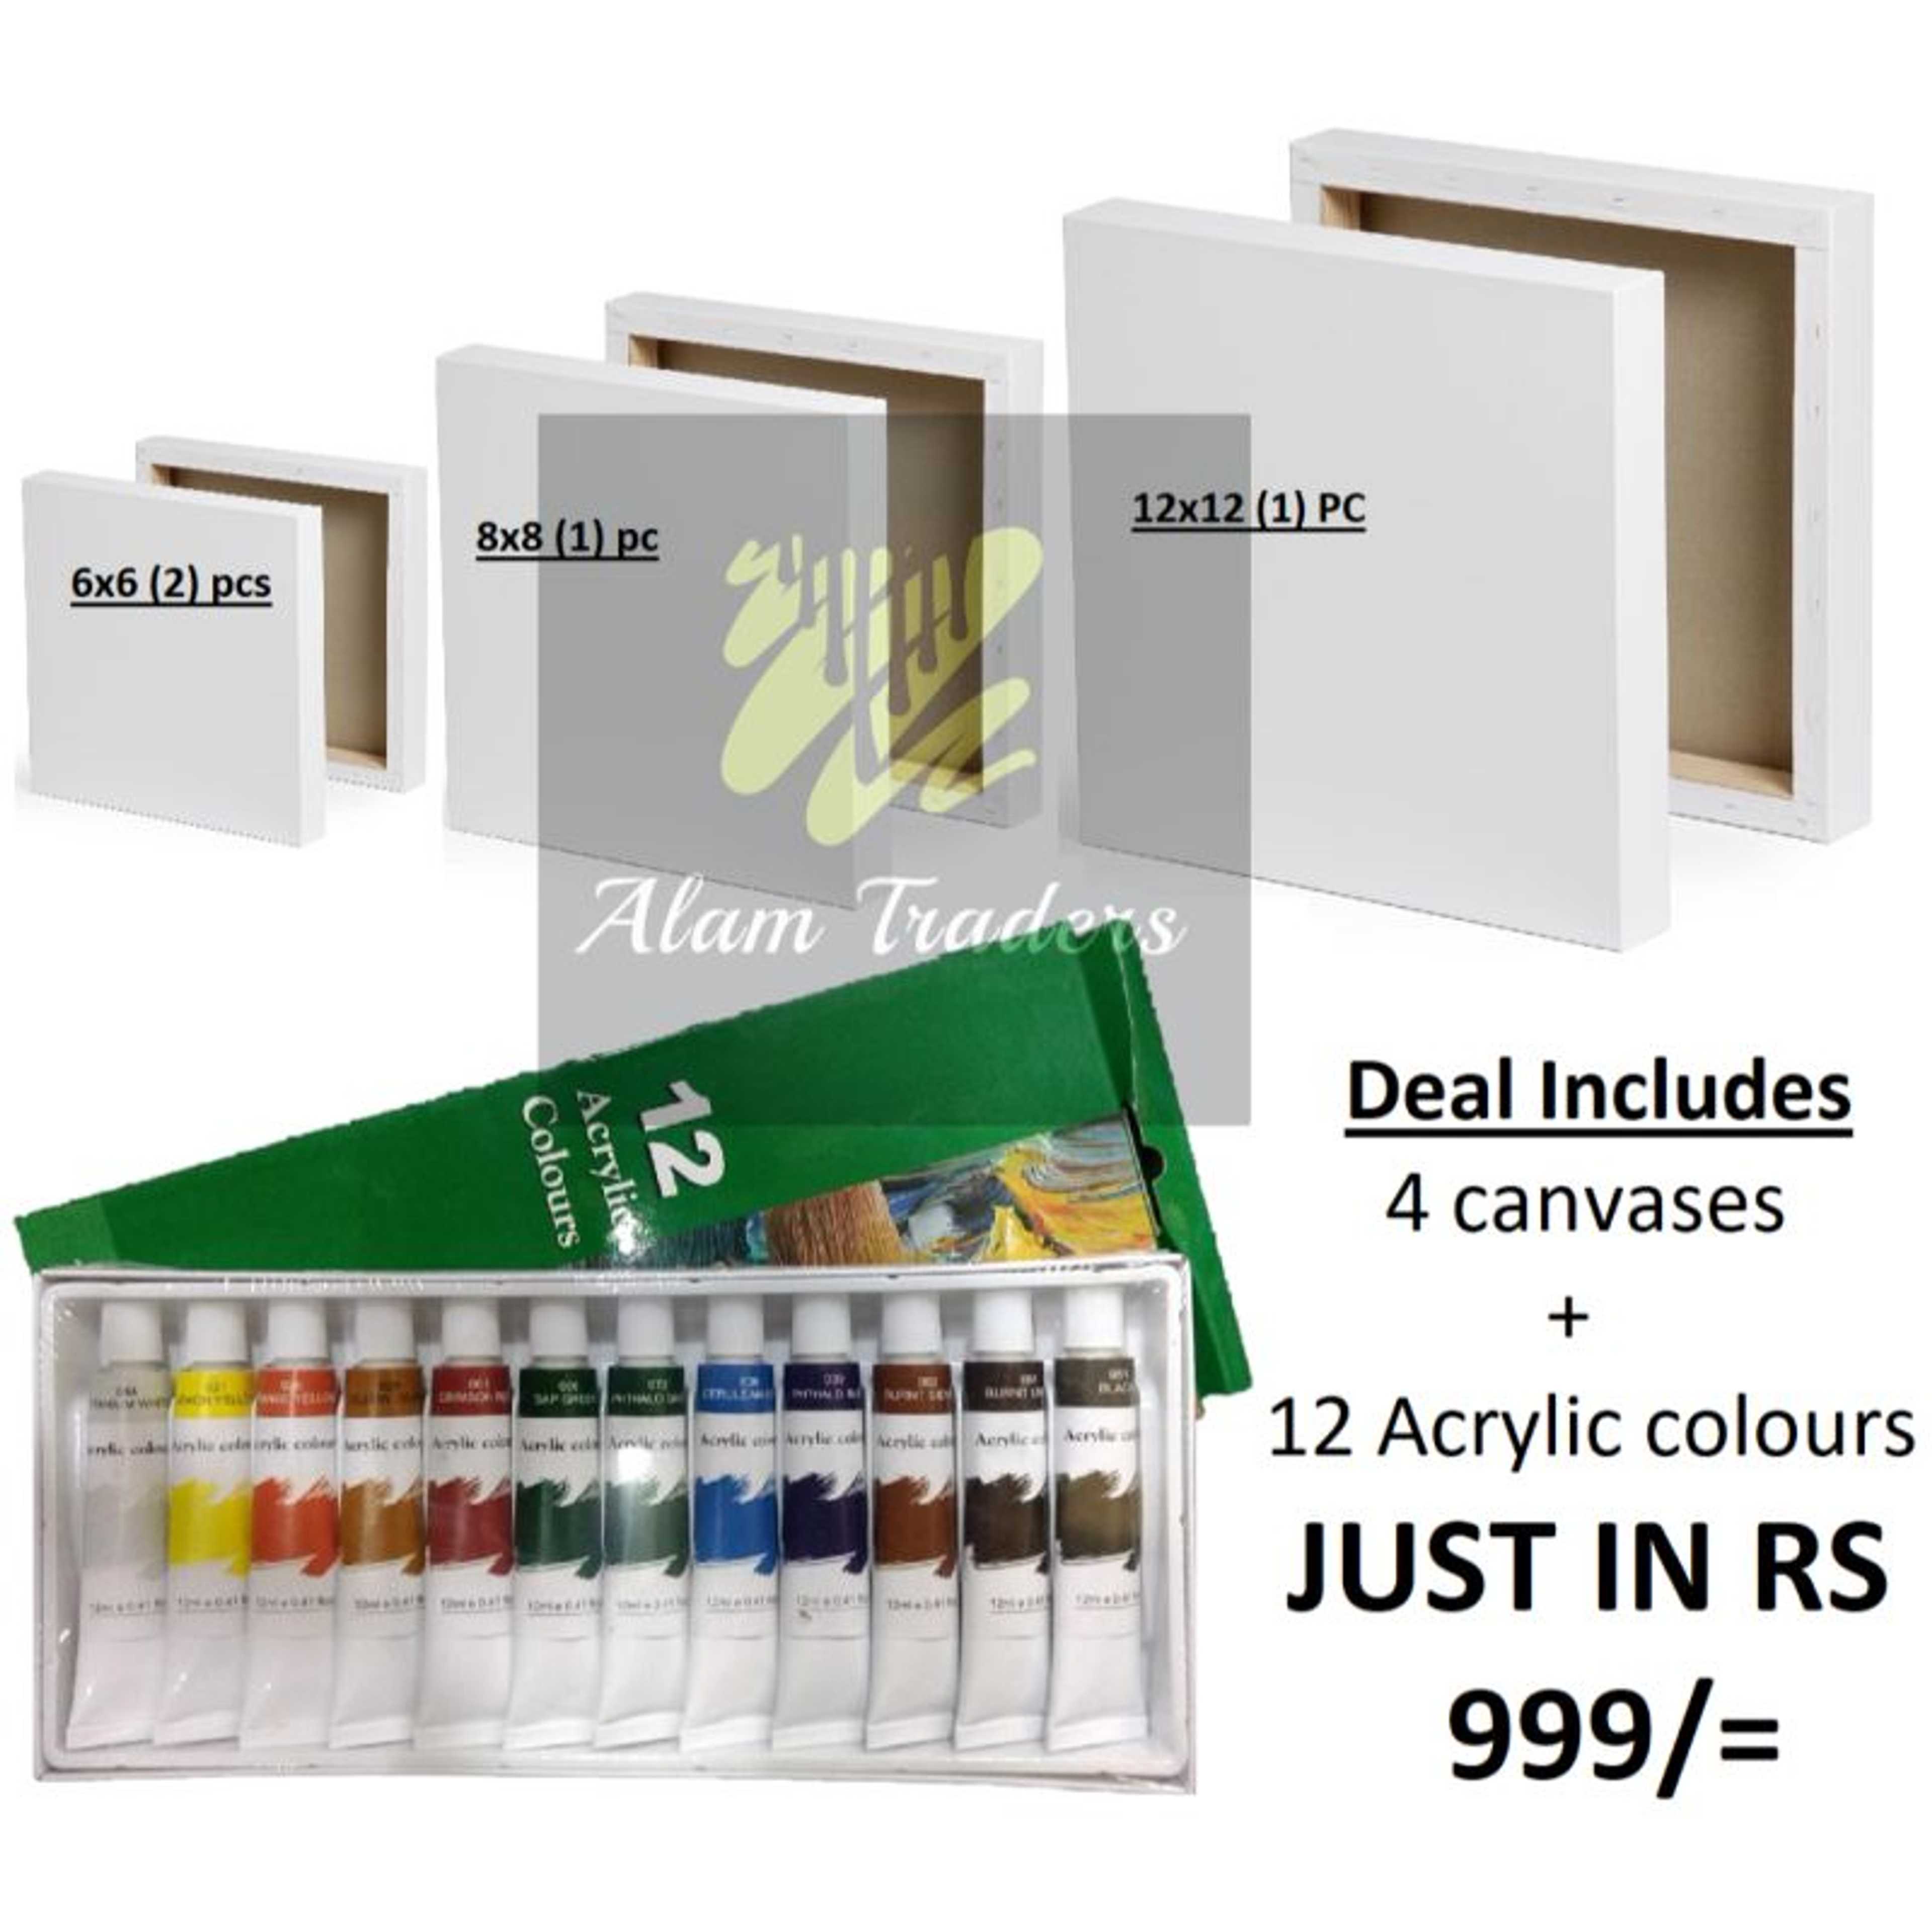 DEAL (2) 6x6 Canvas (1) 8x8 Canvas (1) 12x12 Canvas with (1) Acrylic 12 PC Colour tube set